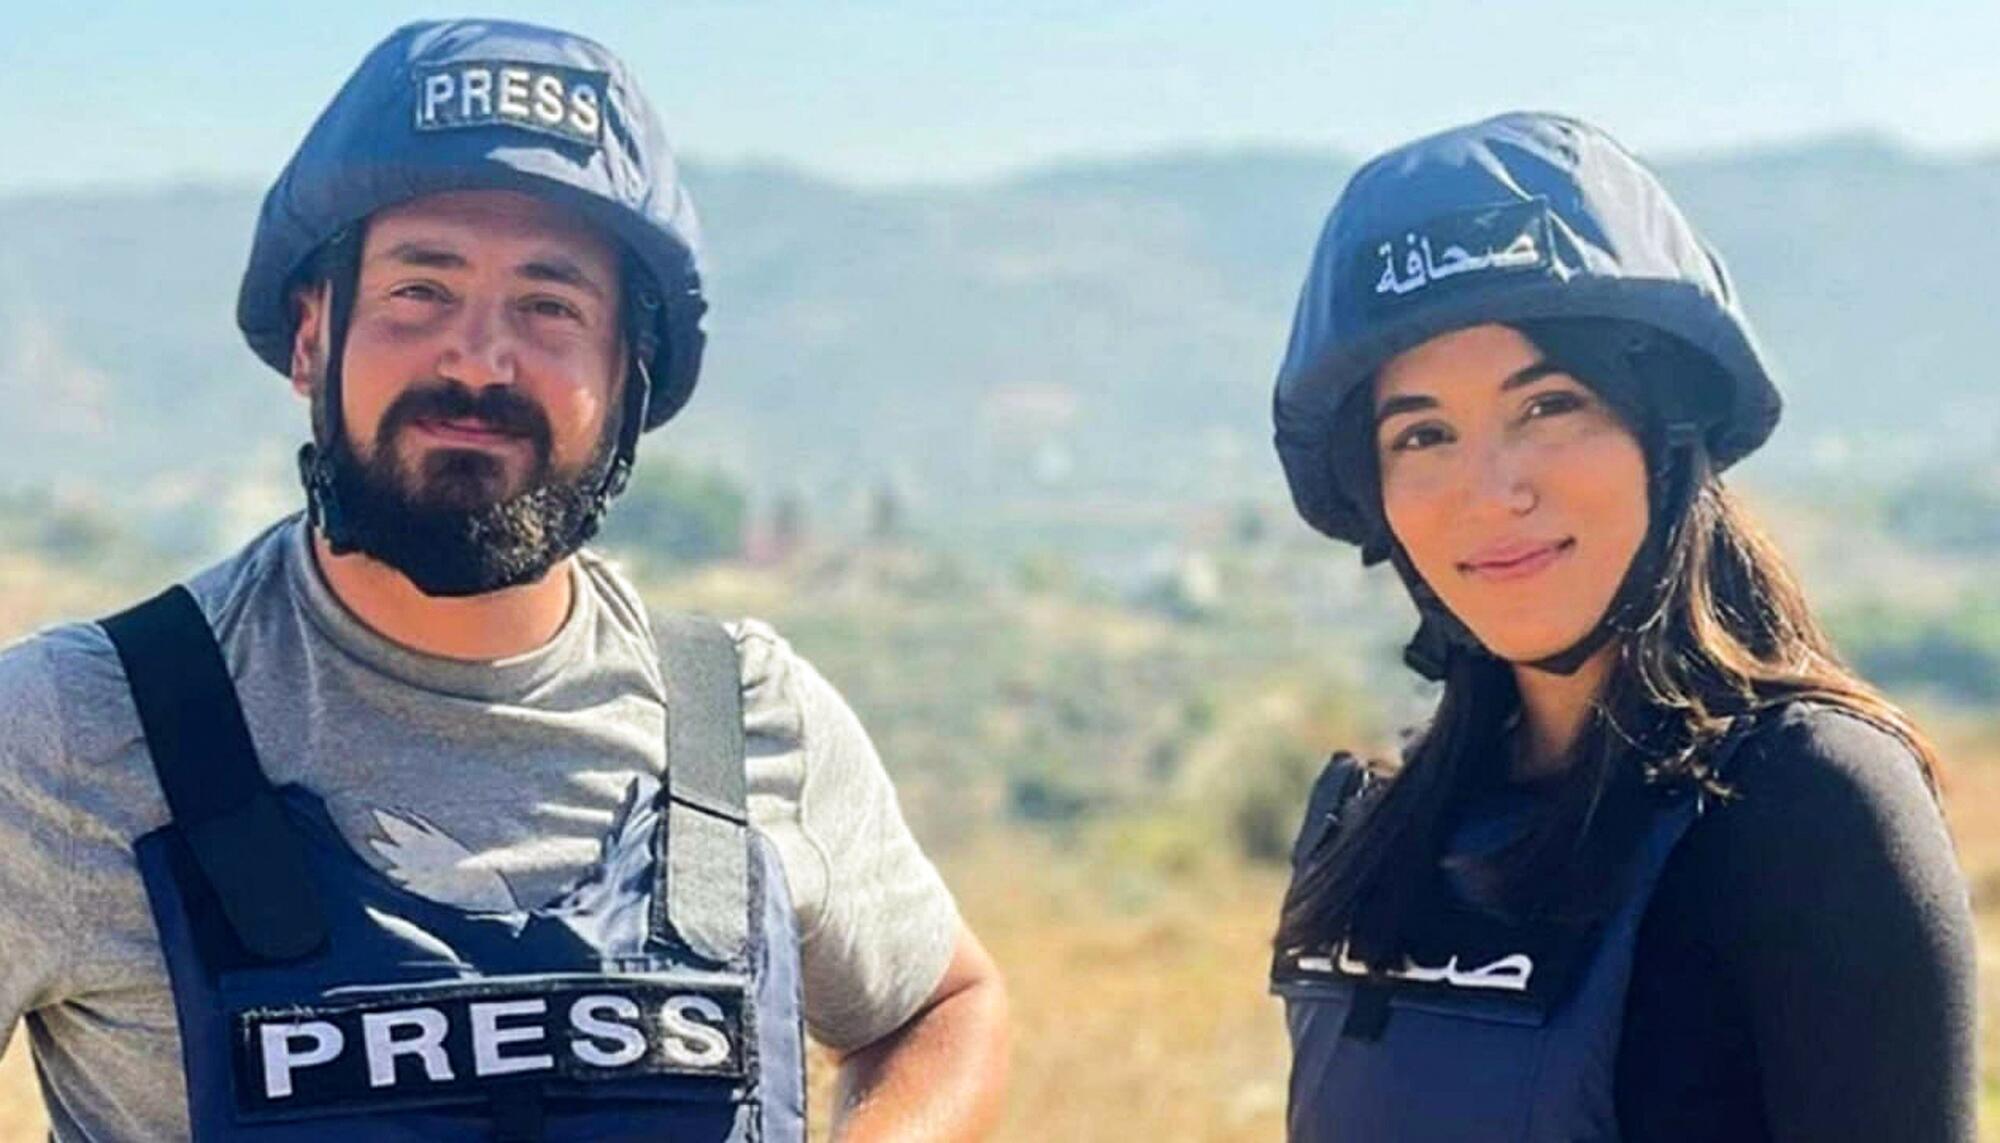 Periodistas asenados Libano